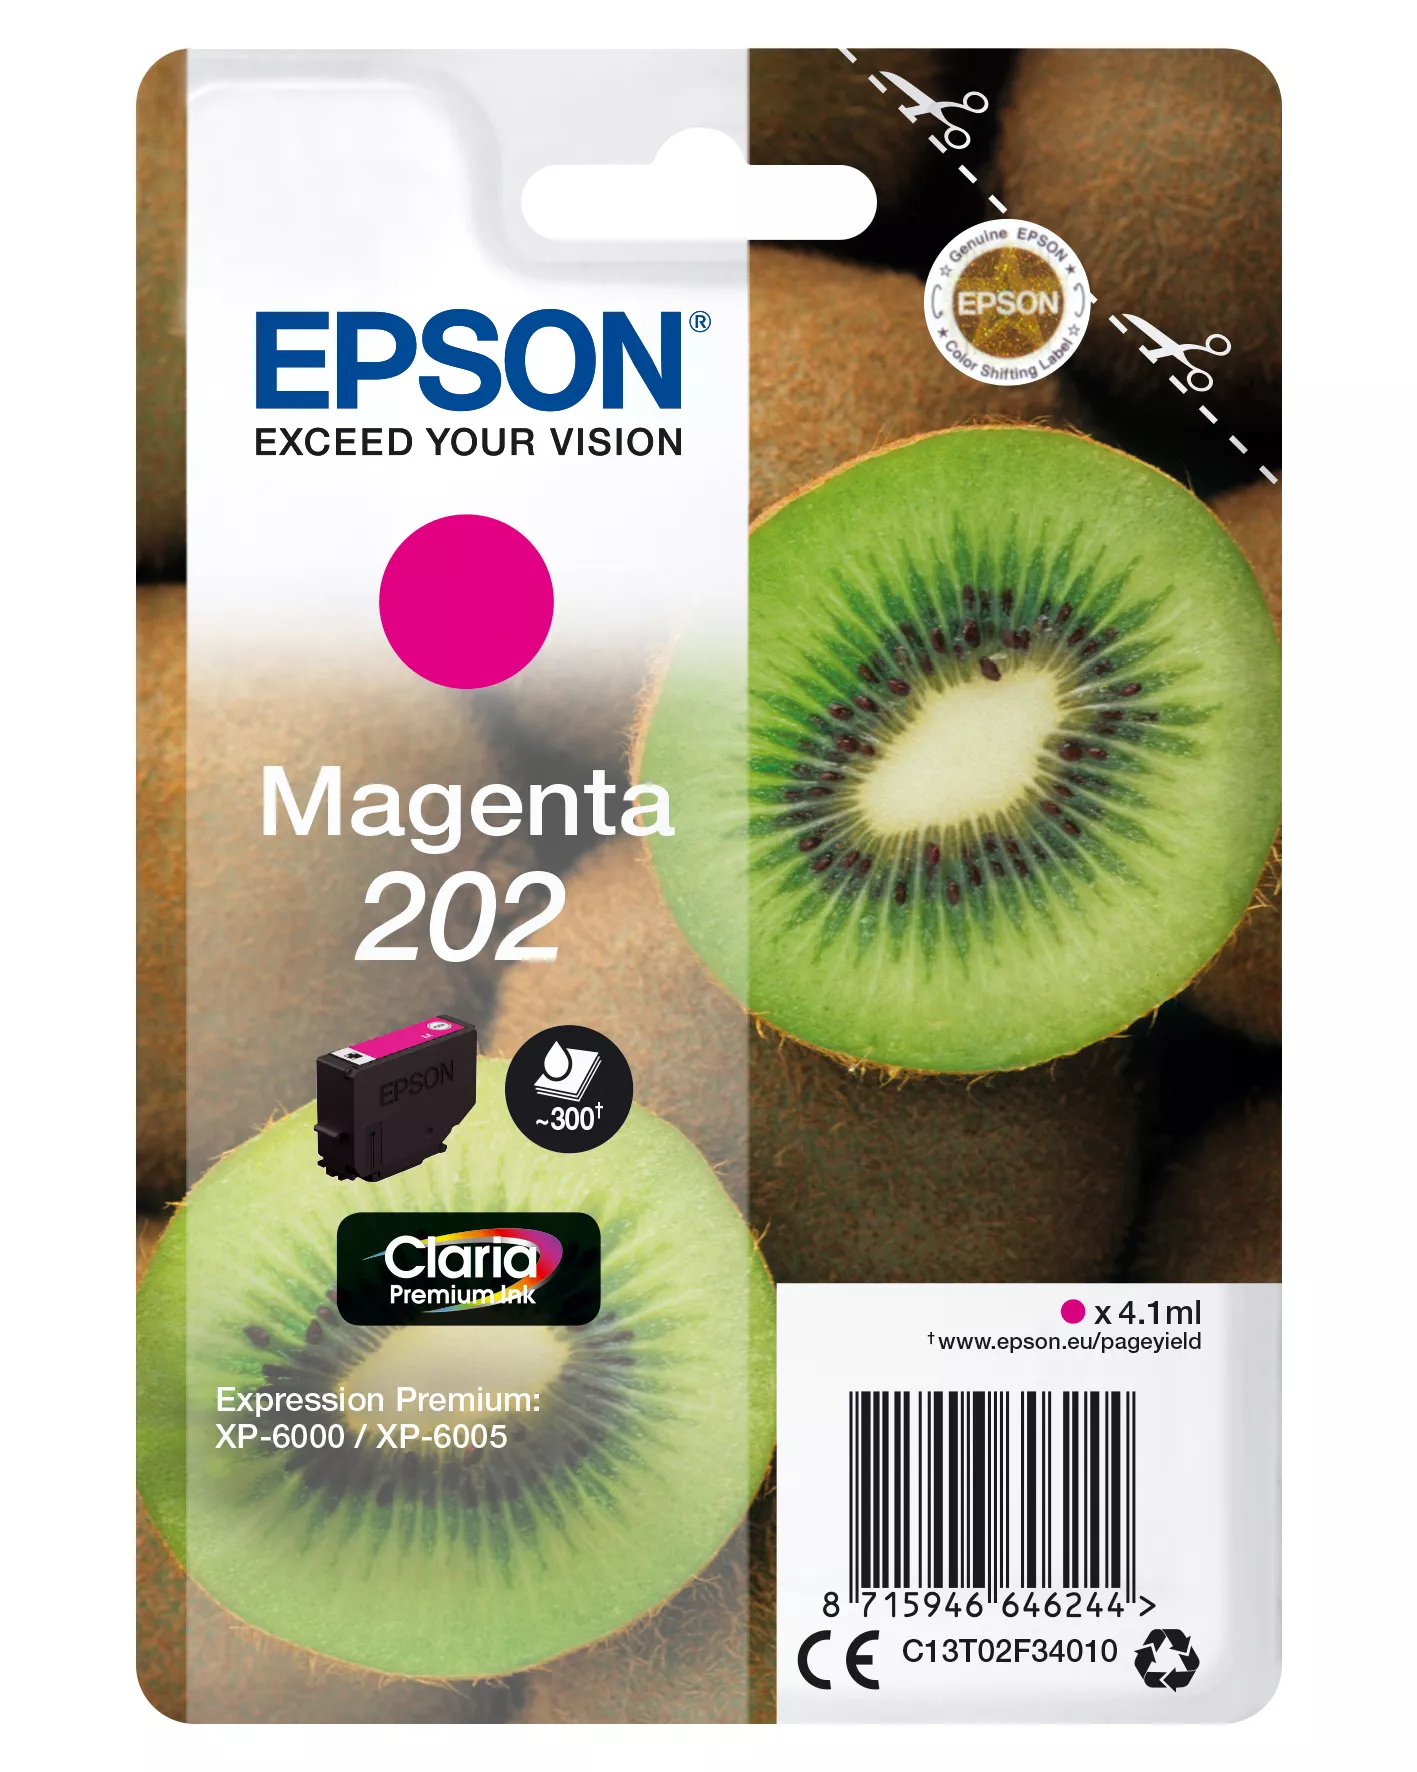 Achat EPSON Encre Claria Premium - Cartouche Kiwi 202 Magenta - 8715946646244